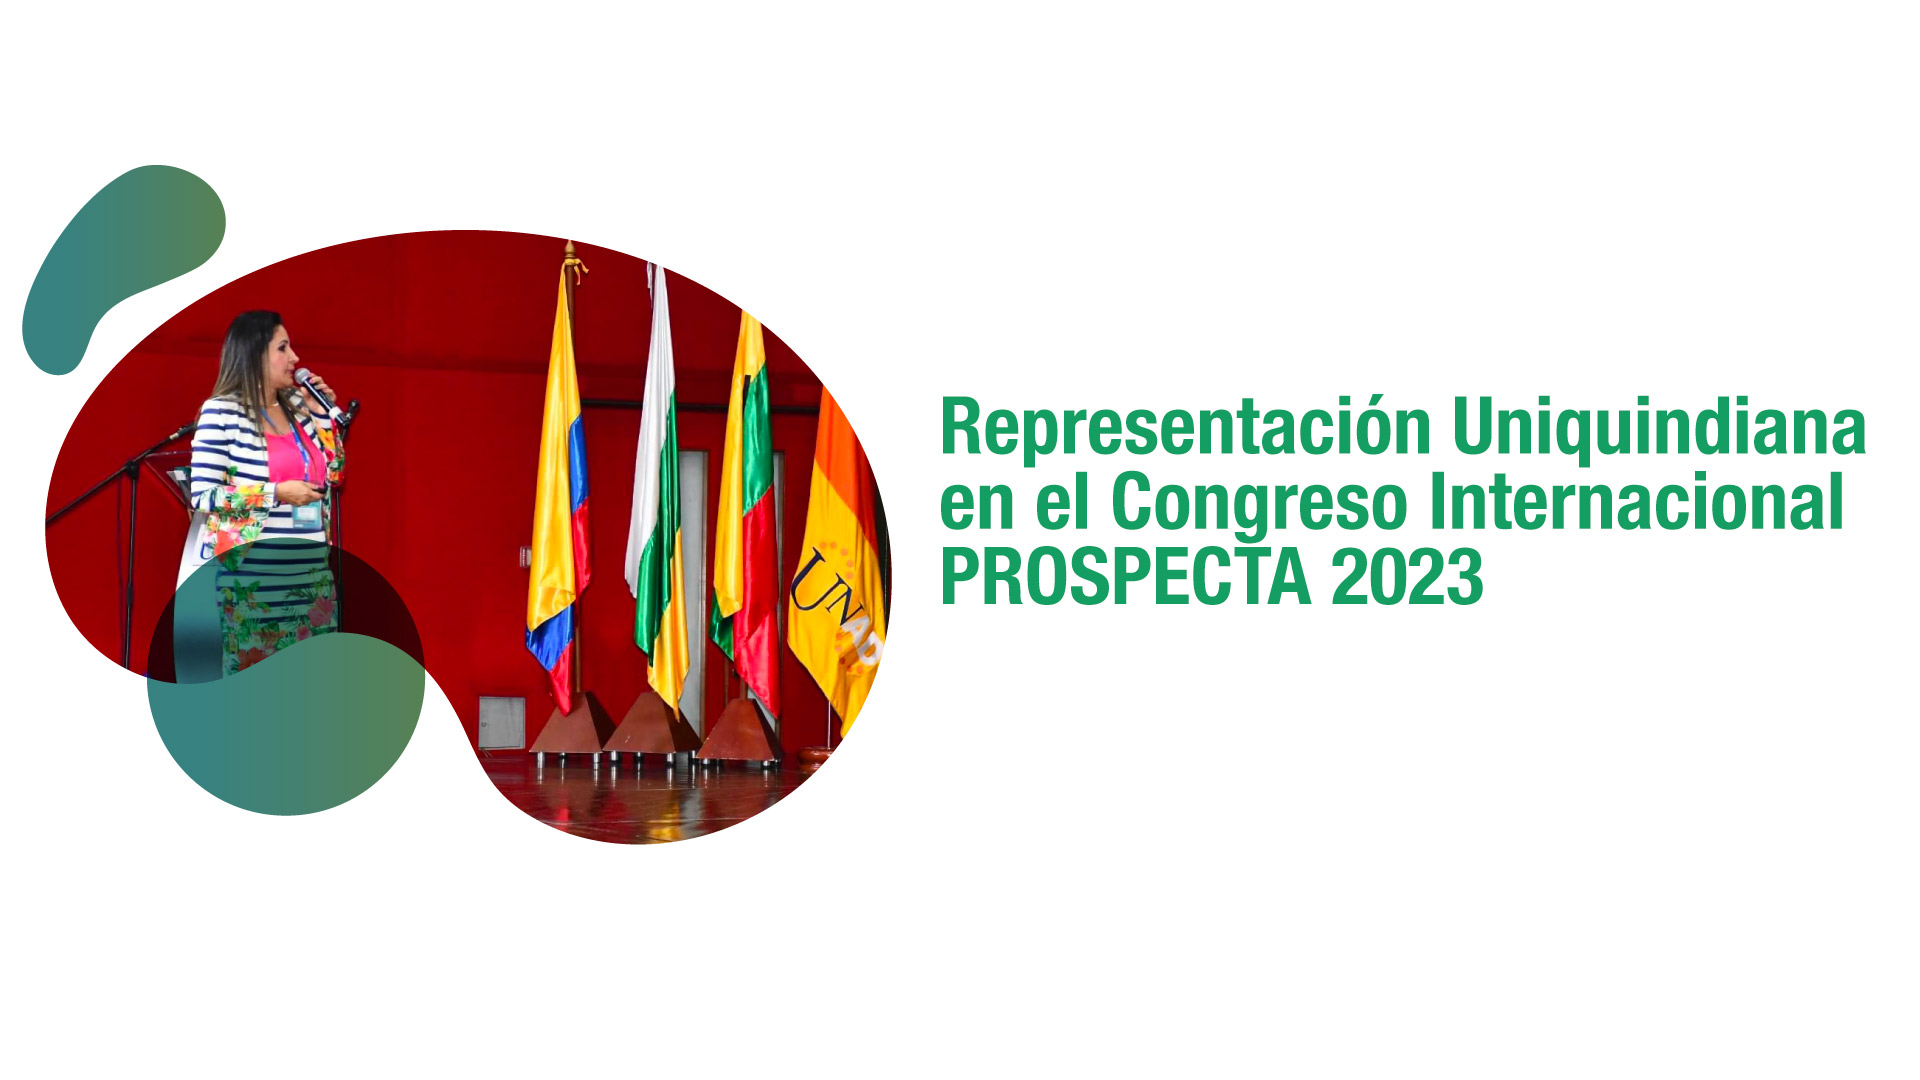 Directora del programa de Economía, única colombiana en participar en el Congreso Internacional PROSPECTA 2023